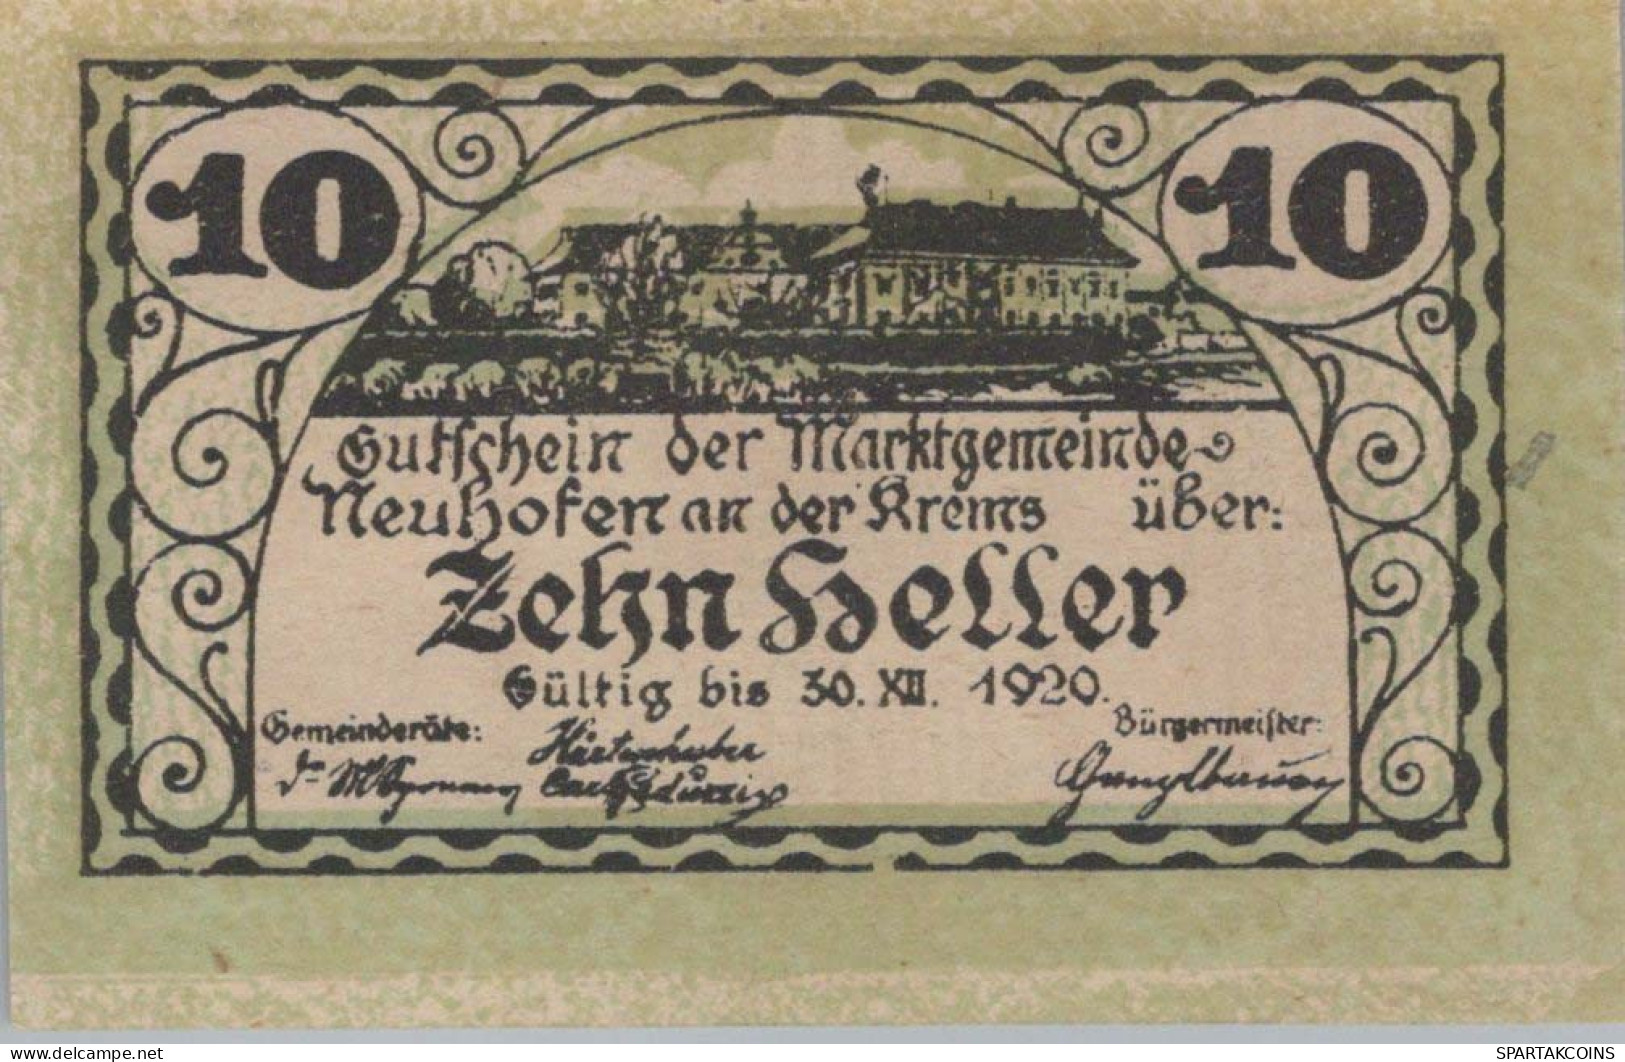 10 HELLER 1920 Stadt NEUHOFEN AN DER KREMS Oberösterreich Österreich Notgeld Papiergeld Banknote #PG630 - [11] Local Banknote Issues